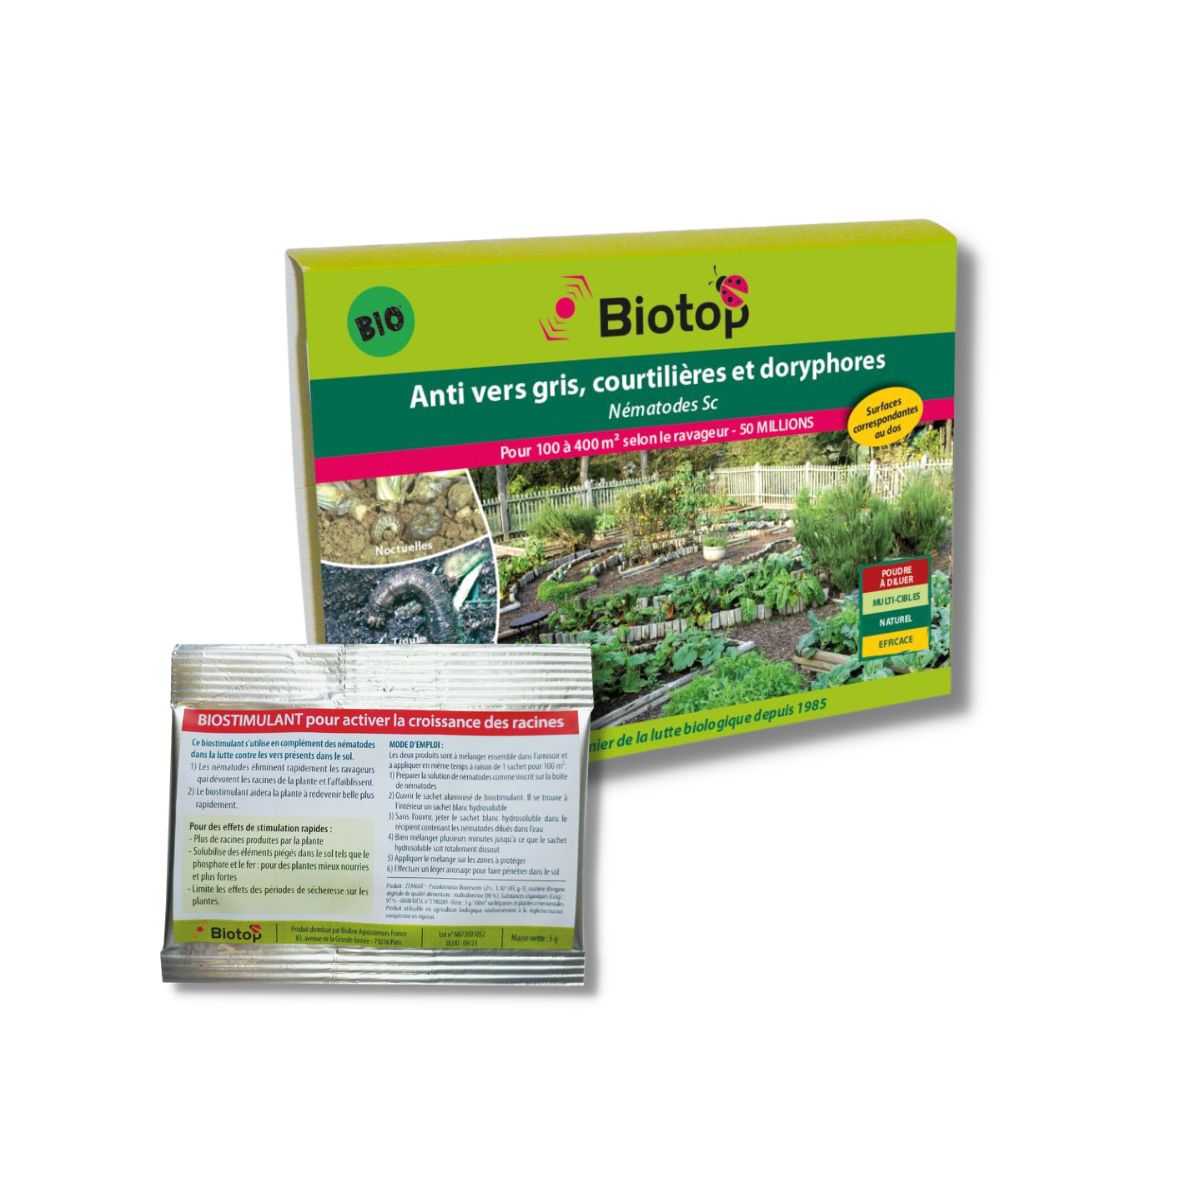 Edialux Nema-T-bag Pot Plant - Nématodes contre les mouches du terreau - 8  sachets hydrosolubles (BIO)